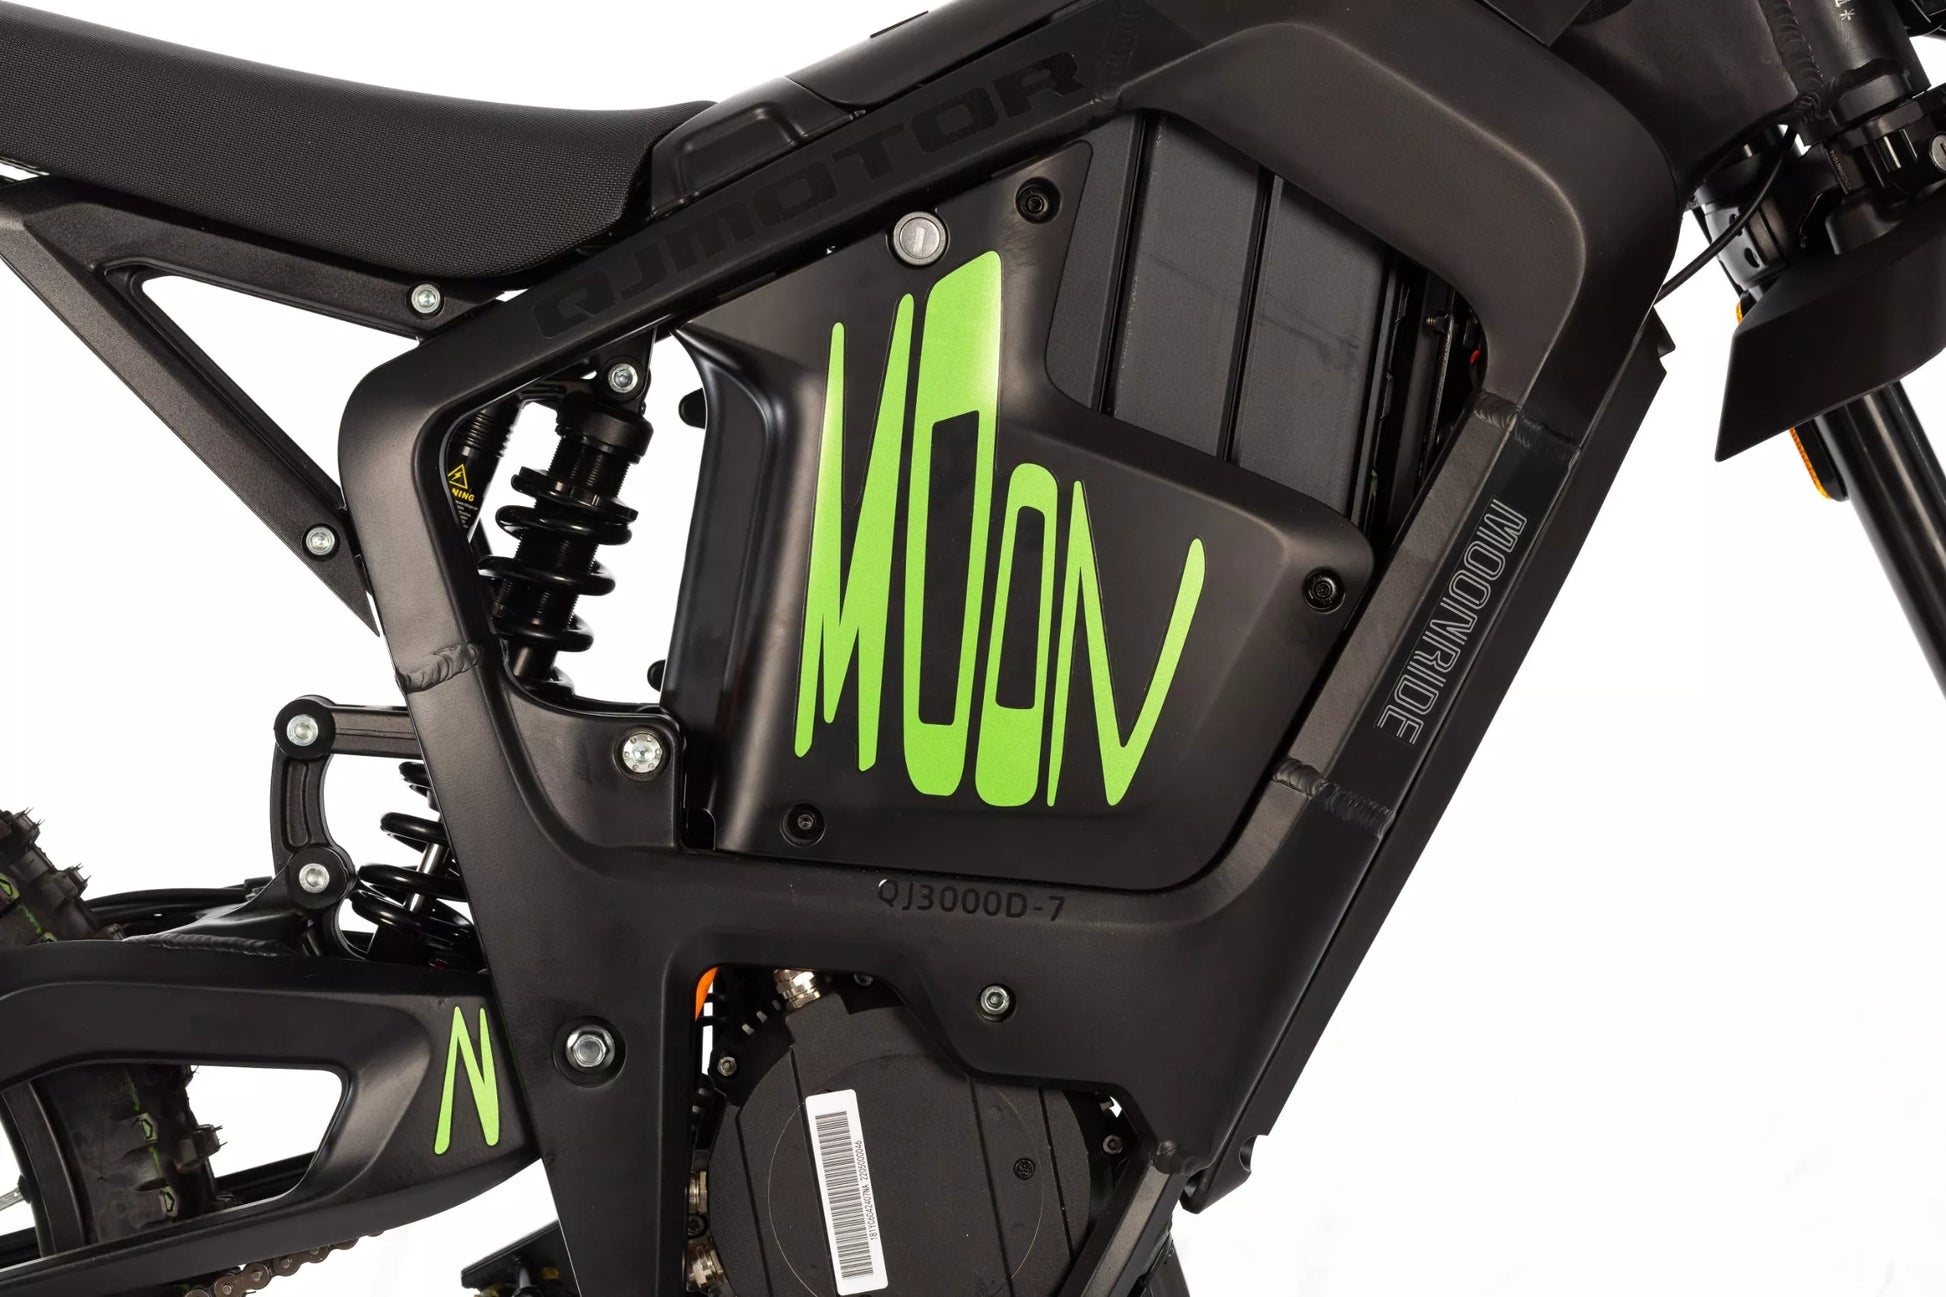 Moto électrique - QJ Motor - Moonride cross - Excellent Motos par QJ Motors - Seulement €5290! Acheter maintenant sur Nexyo.fr